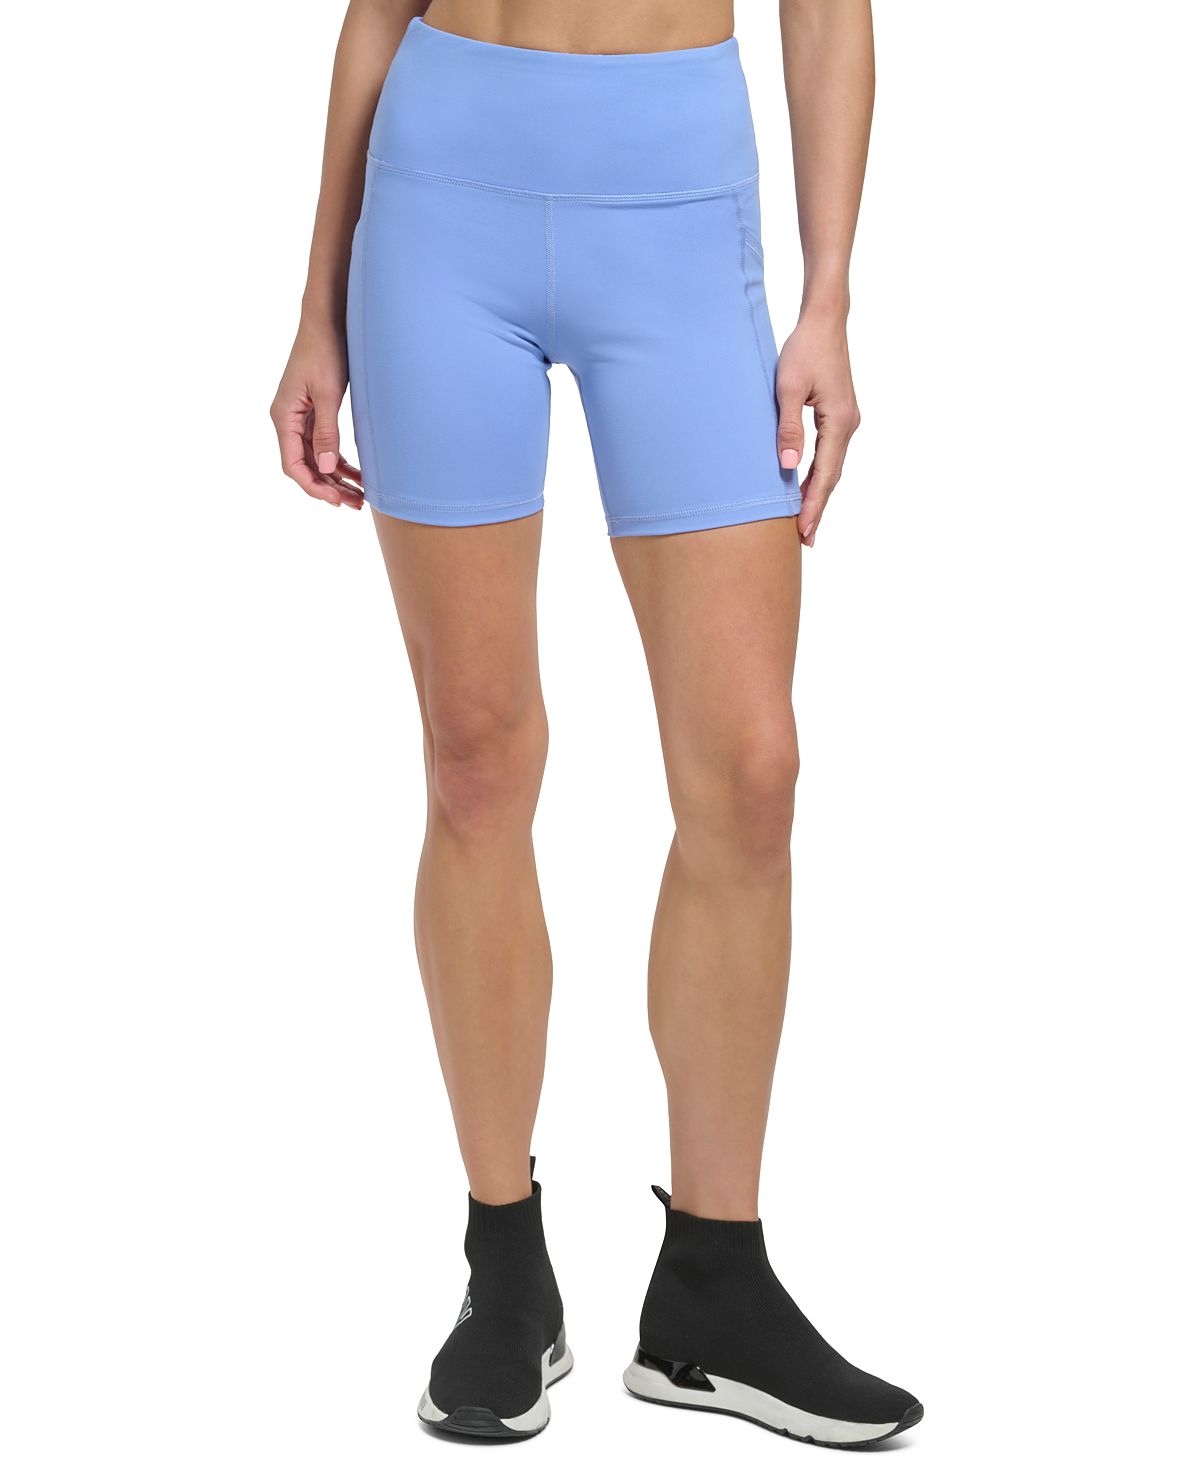 Женские велосипедные шорты Balance со сверхвысокой посадкой без застежки DKNY